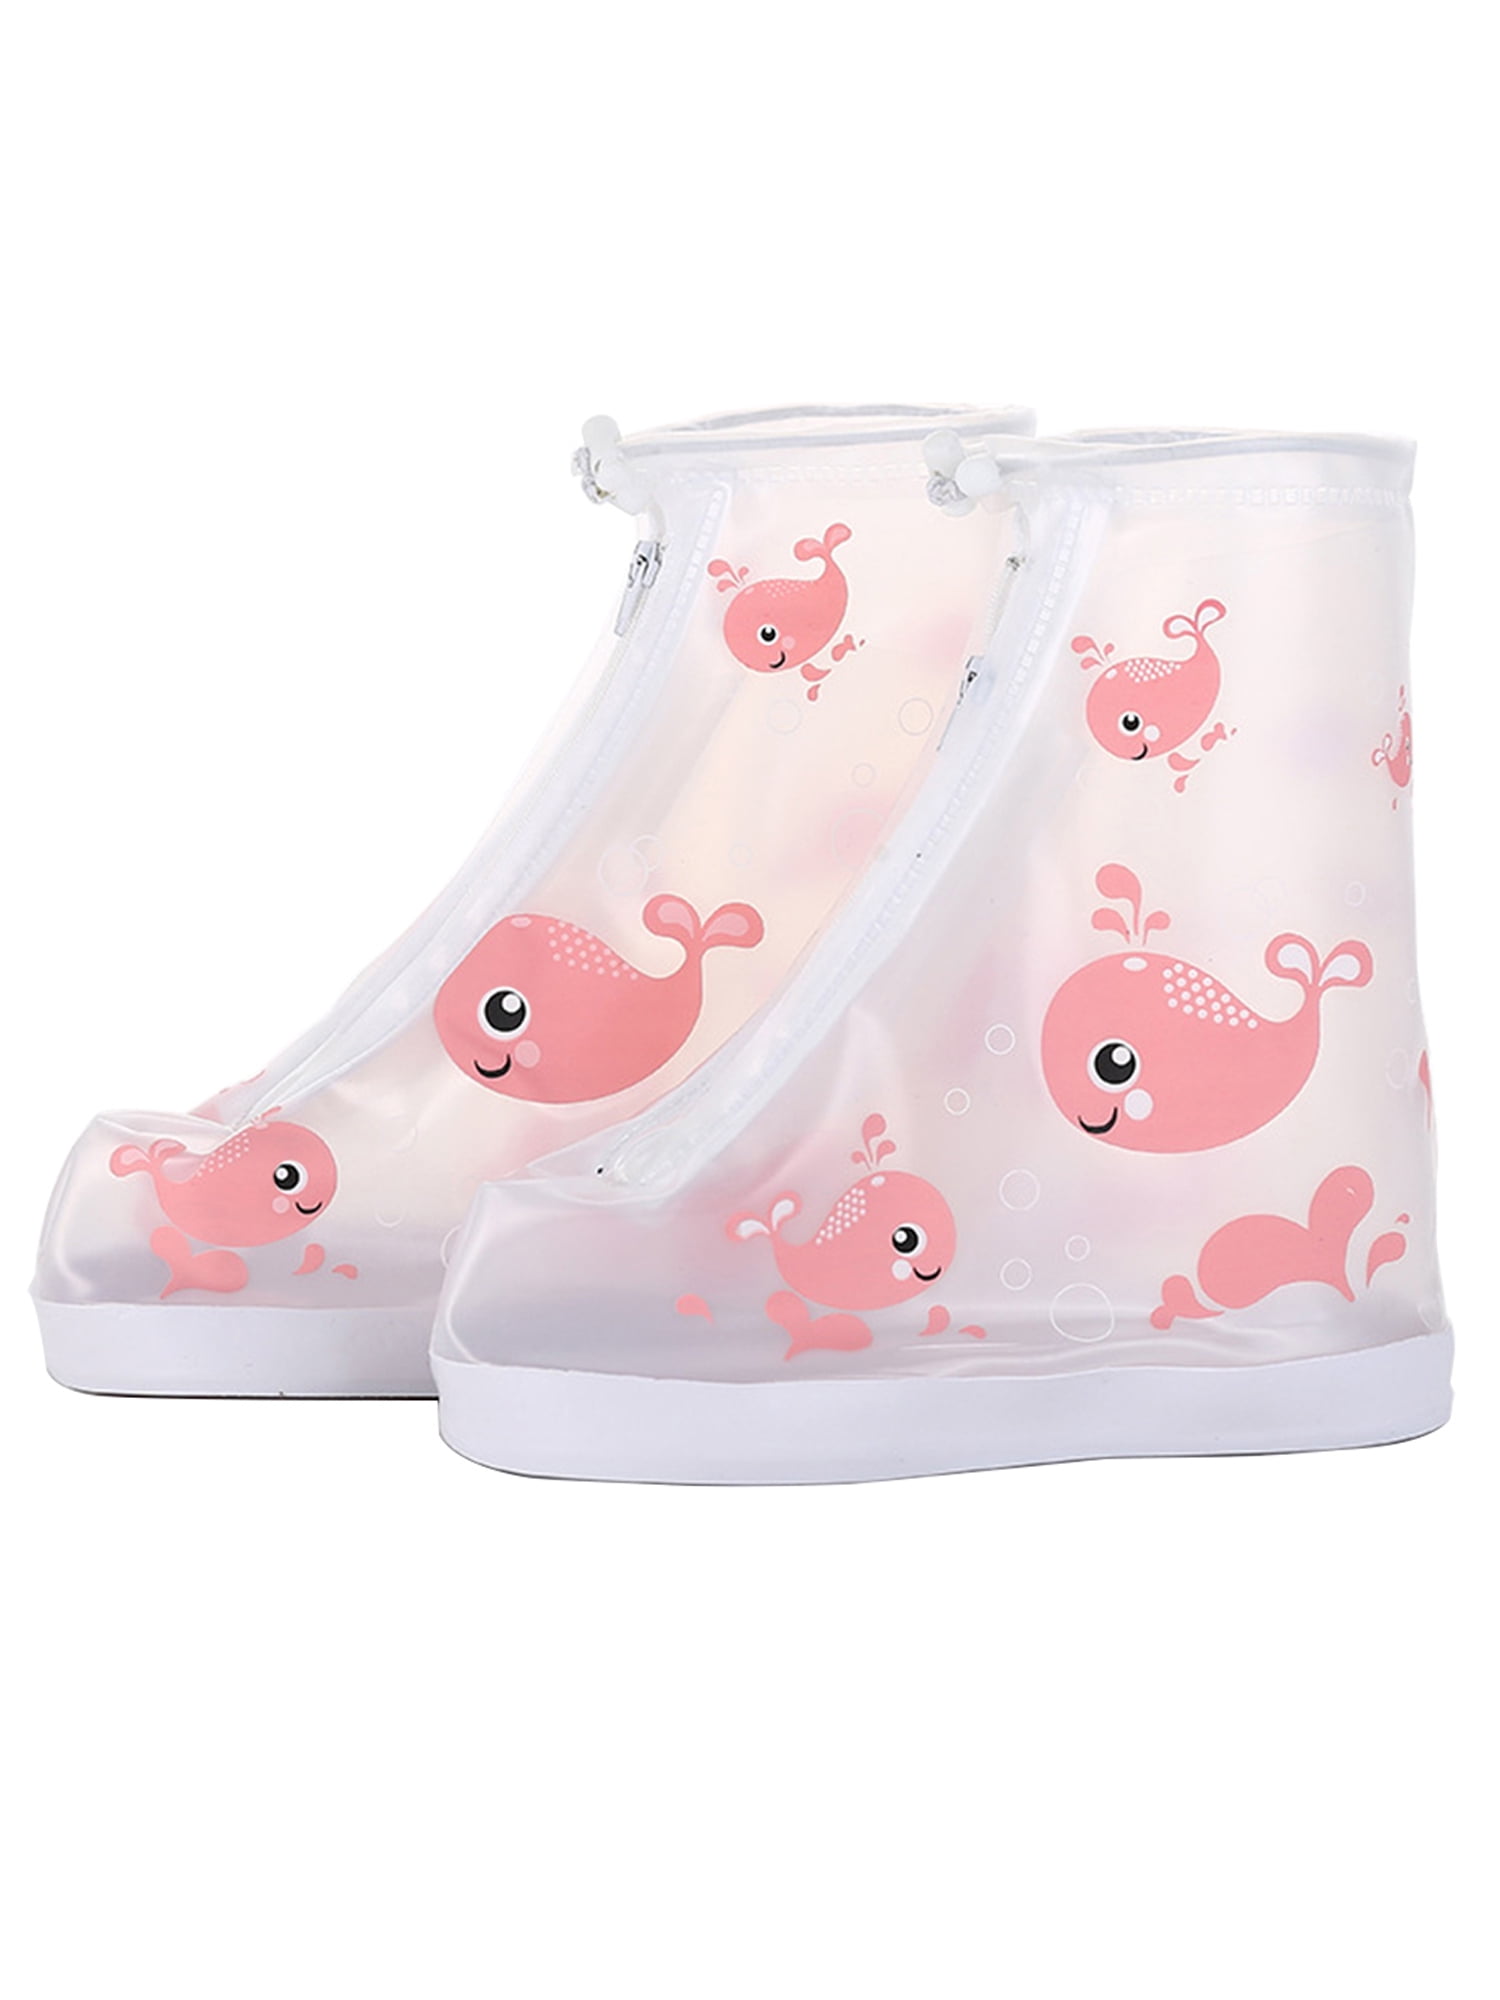 woshilaocai Children Waterproof Shoes 